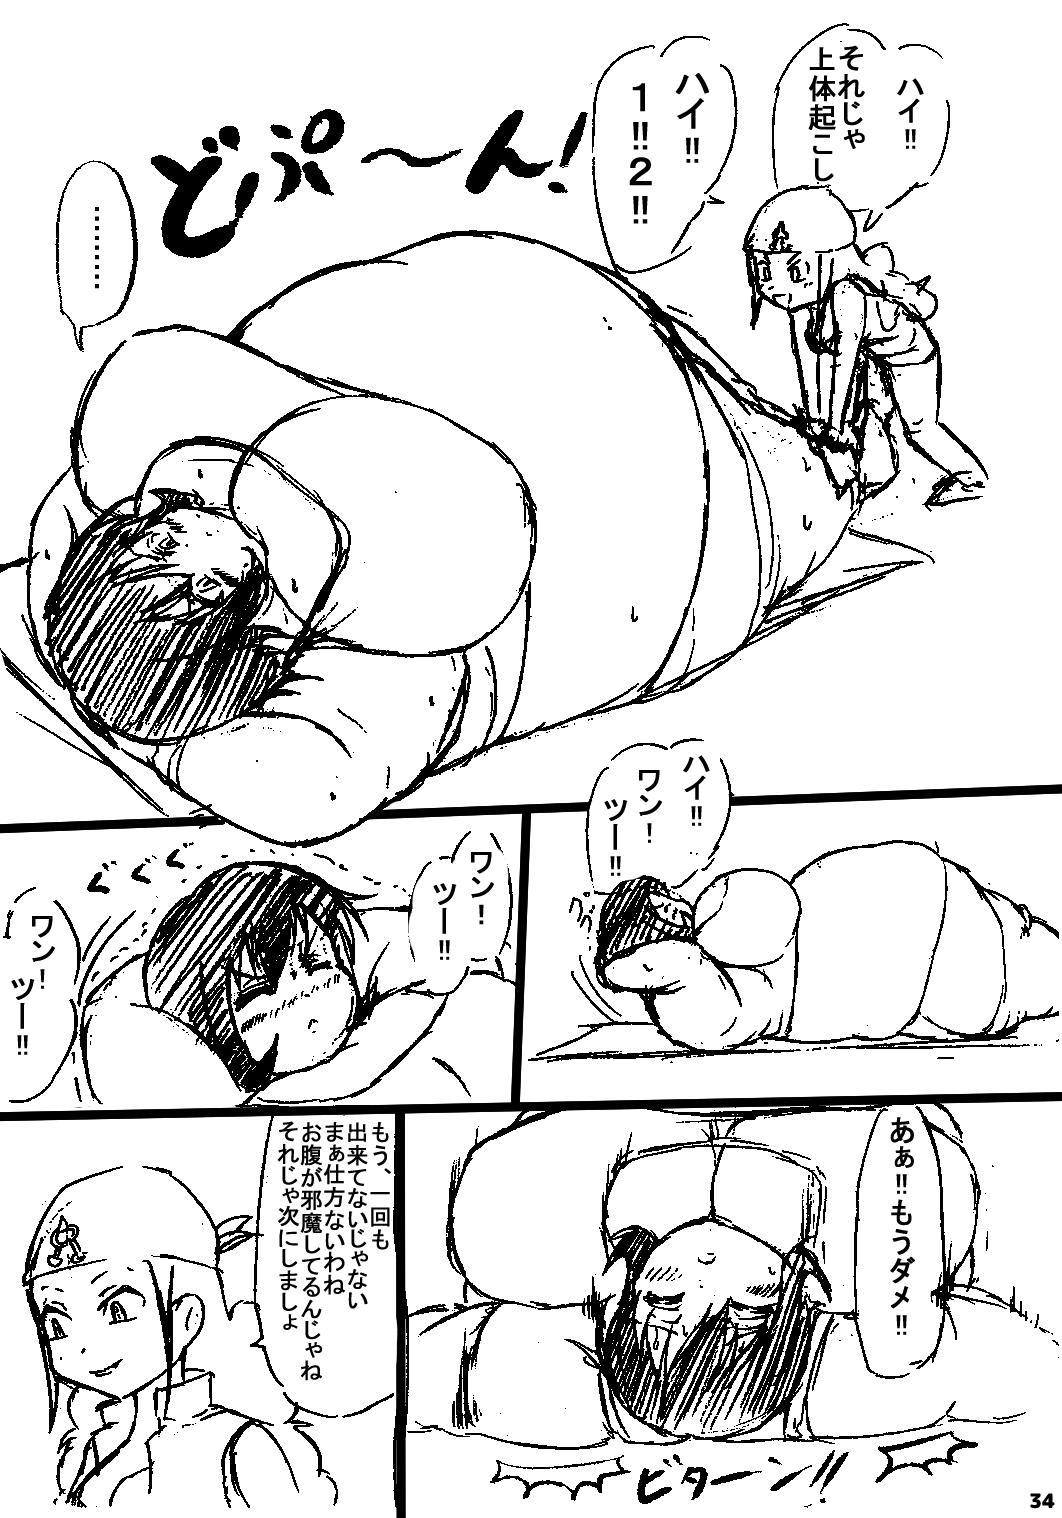 ポケスペカガリ肥満化漫画 32